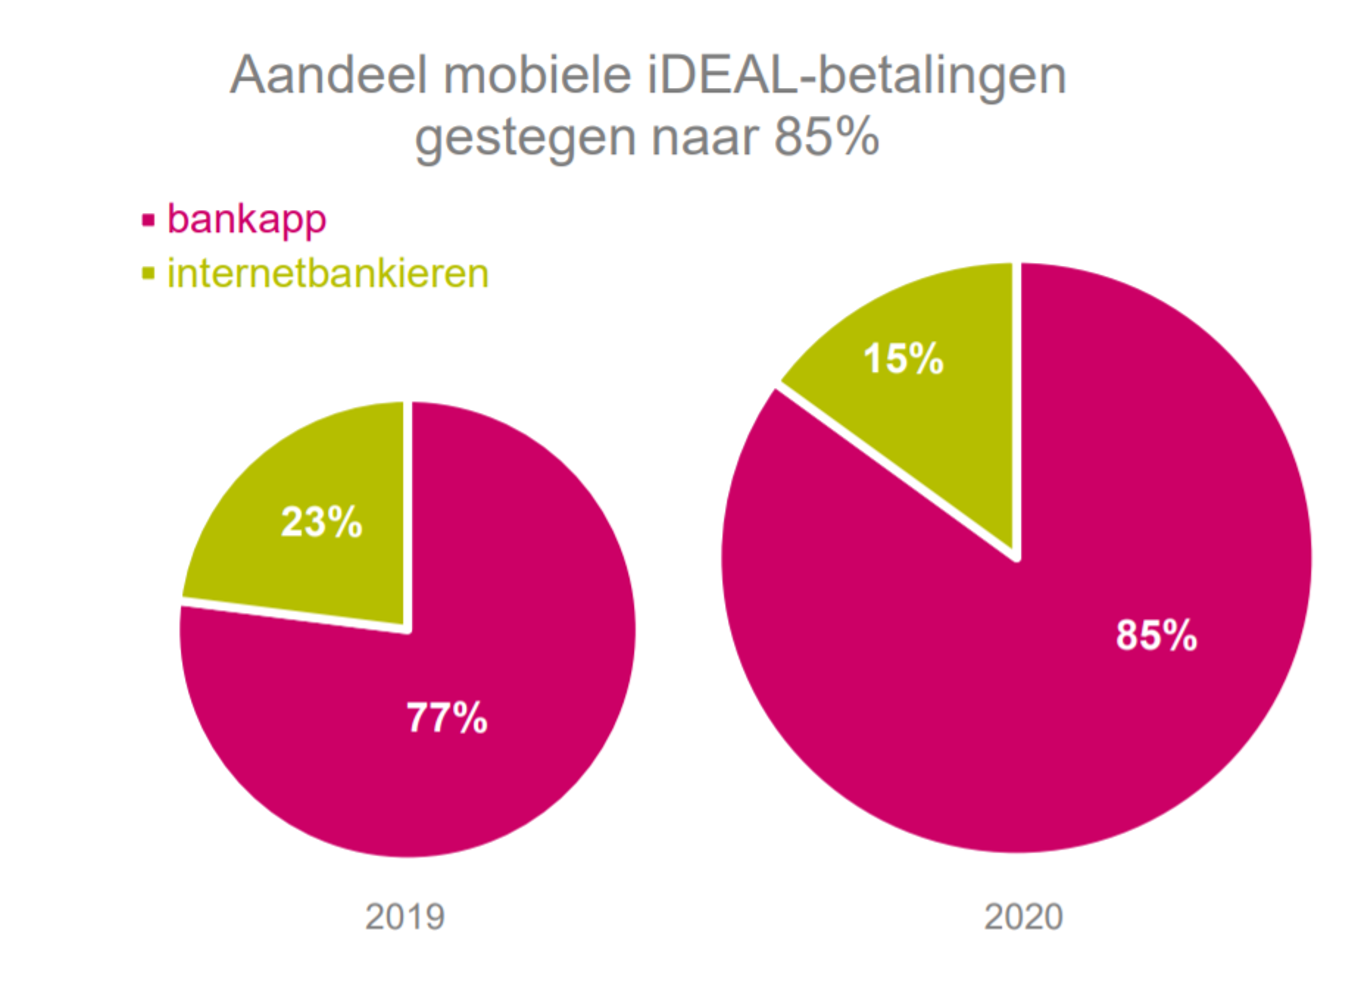 Het aantal mobiele iDEAL-betalingen steeg naar 85% in 2020.